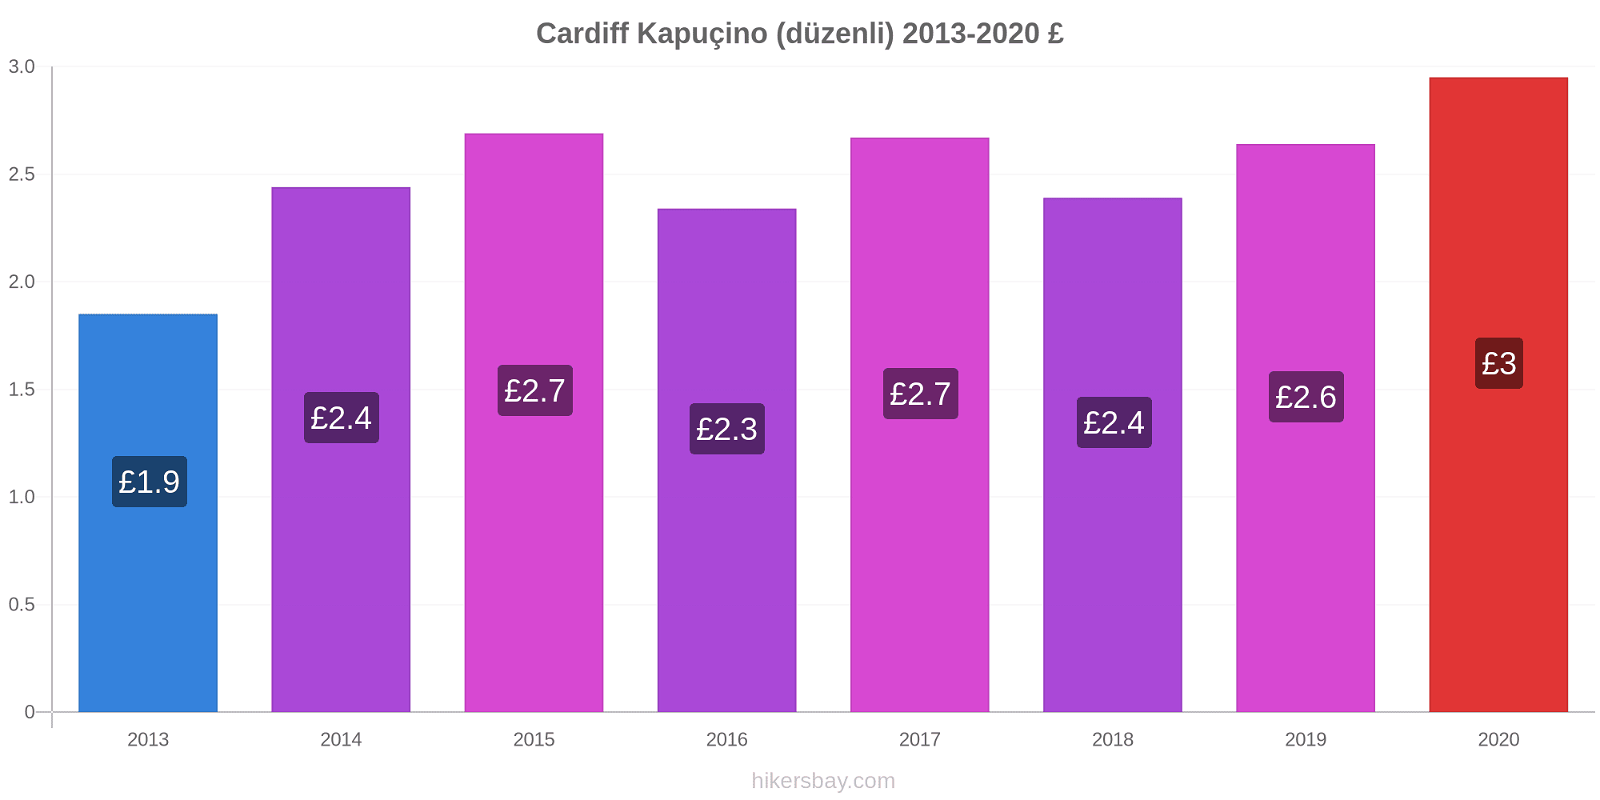 Cardiff fiyat değişiklikleri Kapuçino (düzenli) hikersbay.com